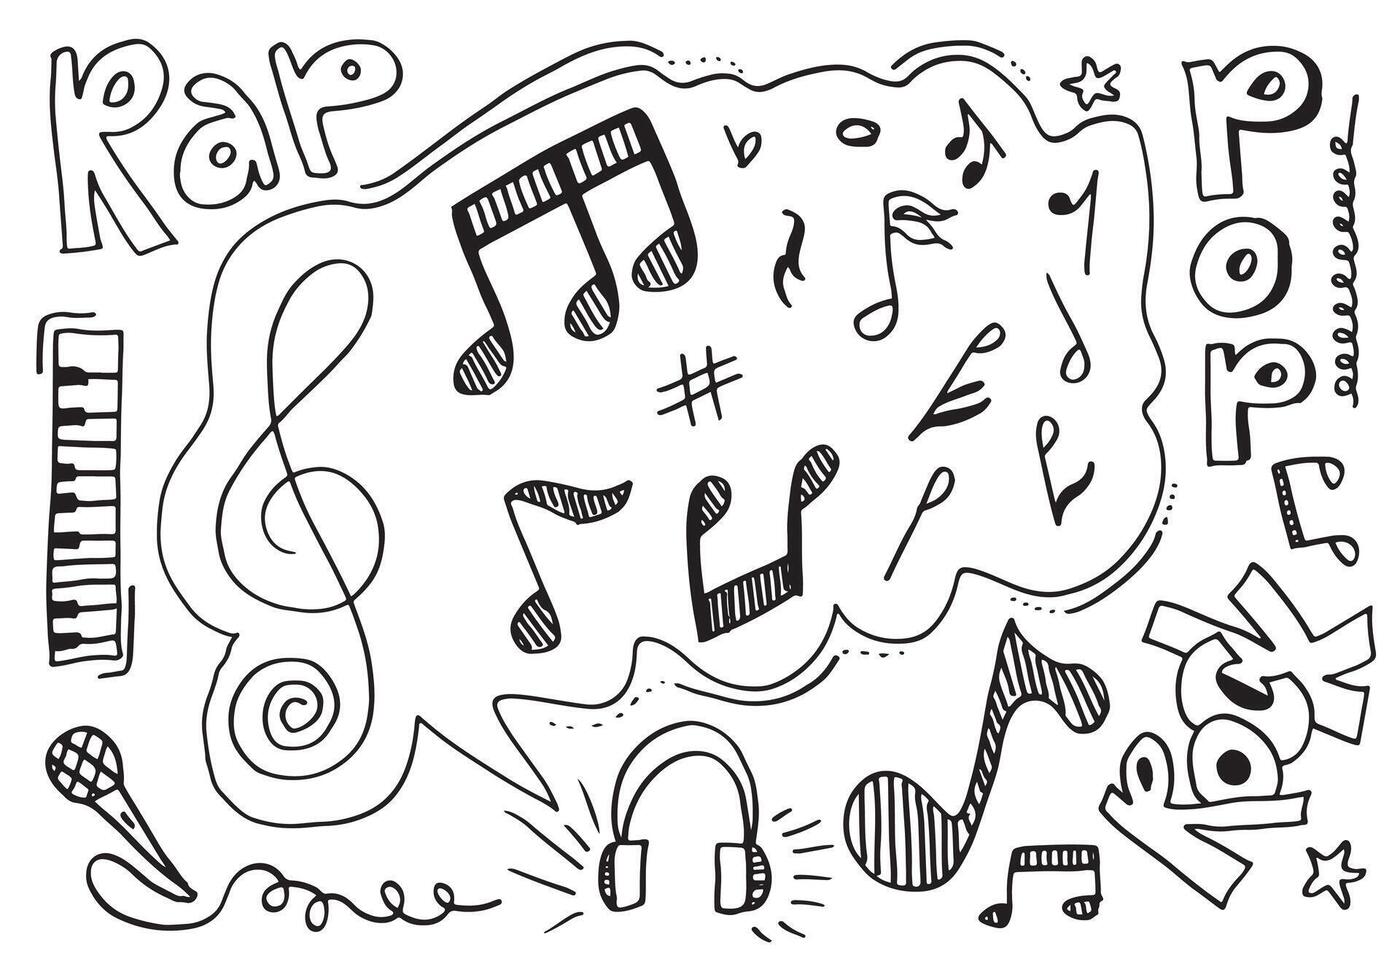 fondo de música ilustración de conjunto de música dibujada a mano. ilustraciones de imágenes musicales, concepto de diseño. vector